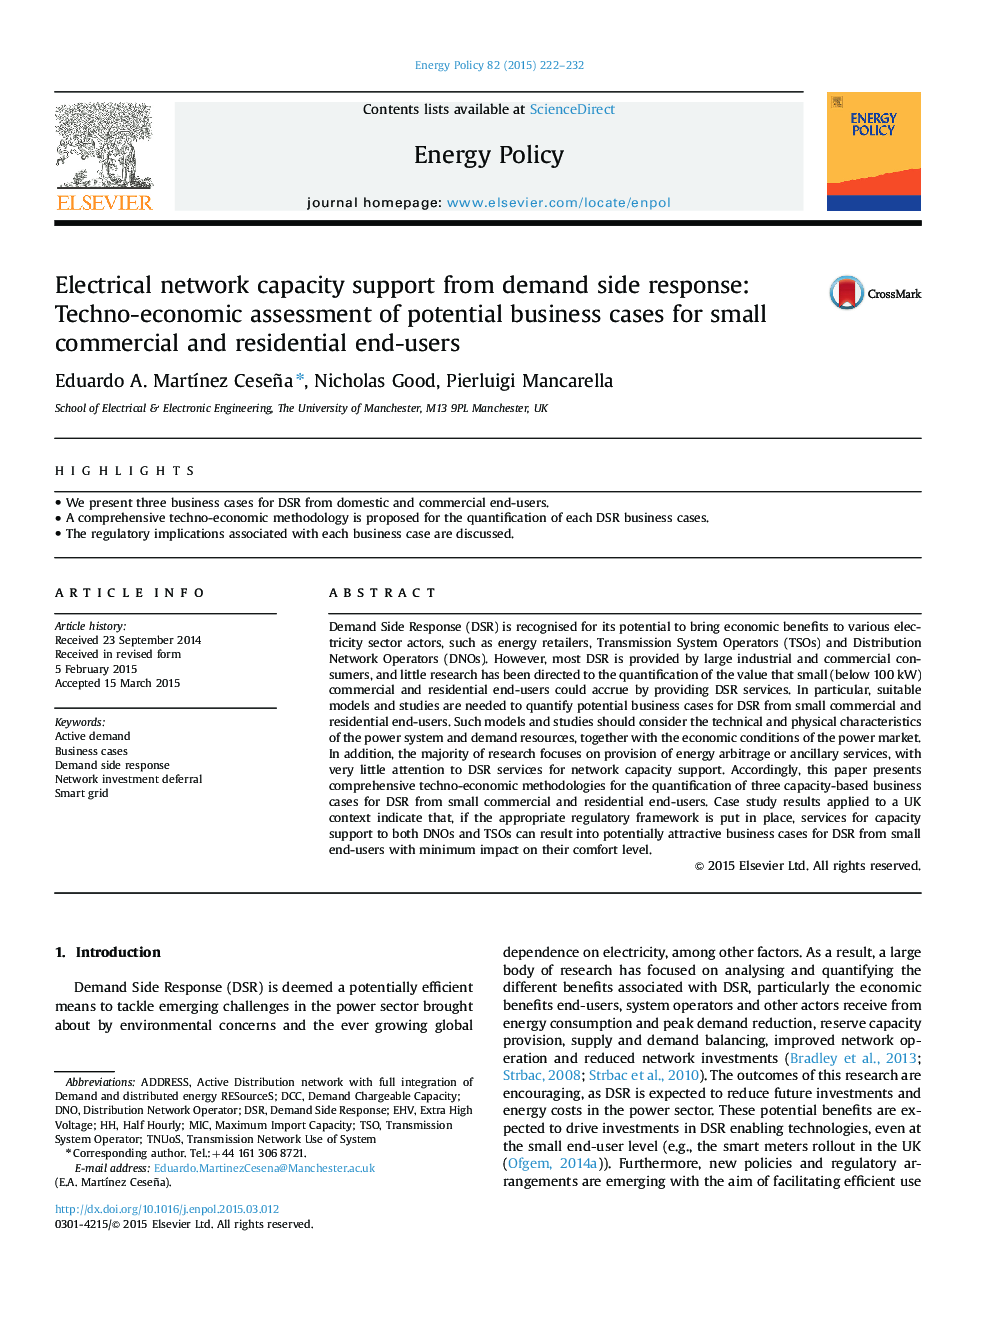 پشتیبانی از ظرفیت شبکه برق از پاسخ تقاضا: ارزیابی فنی و اقتصادی موارد بالقوه کسب و کار برای کاربران کوچک تجاری و مسکونی 